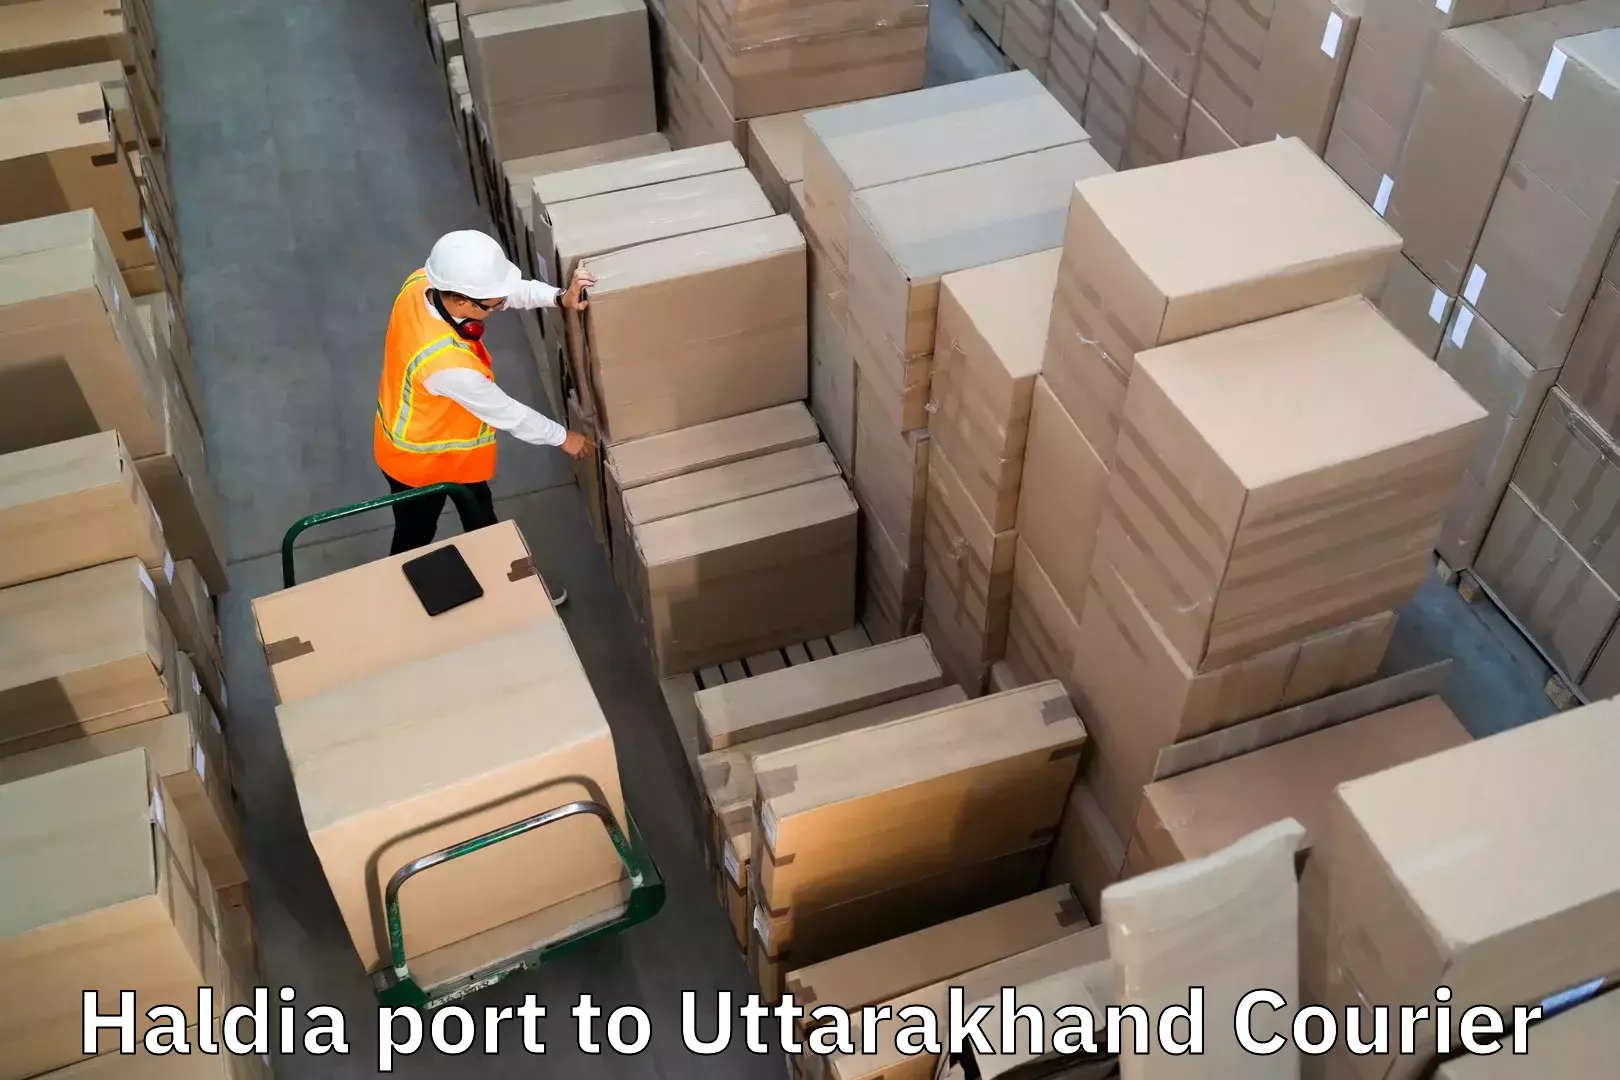 Luggage transport consulting Haldia port to Uttarakhand